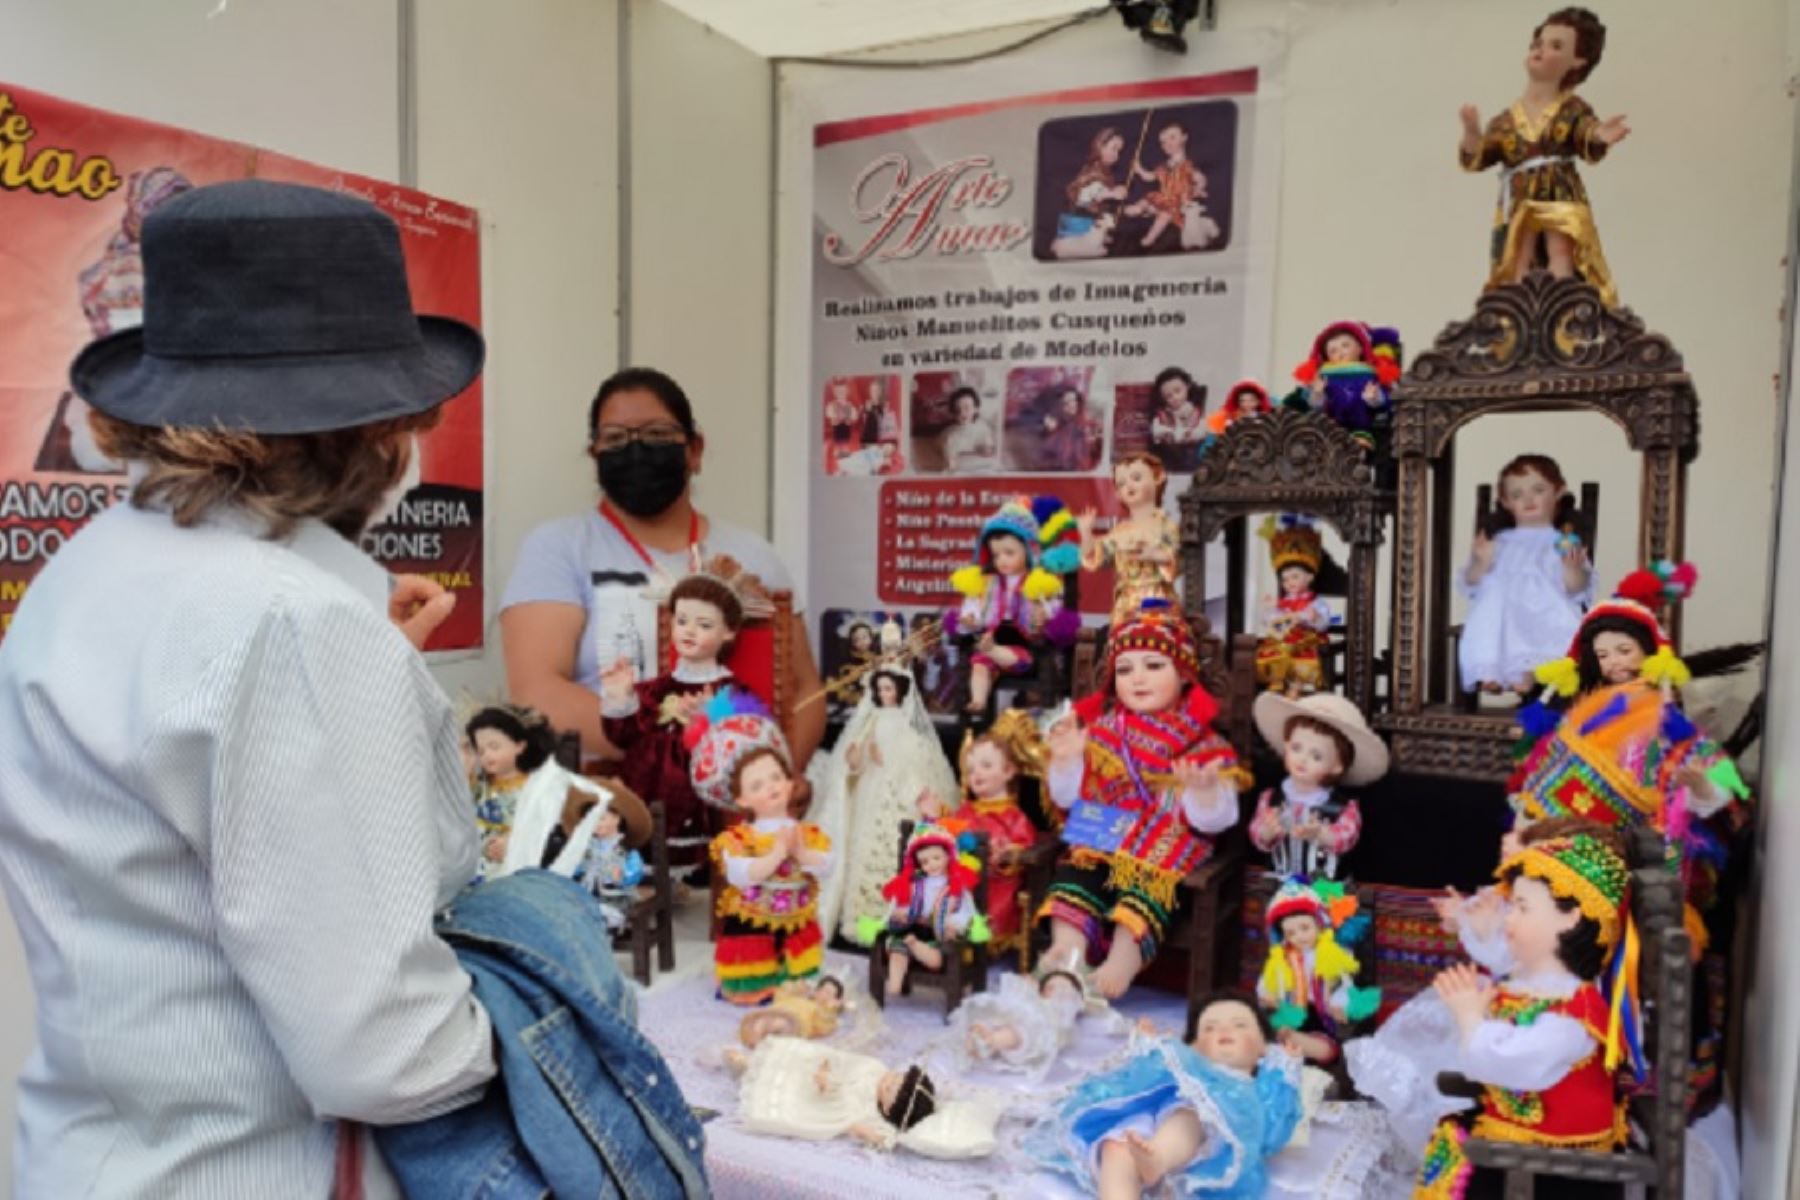 La Plaza de Armas de la ciudad de Cusco es escenario de la feria artesanal “Manos Andinas: grandes maestros de la artesanía”, que reúne a exponentes de diferentes regiones del país, quienes exhiben y venden sus diversas creaciones artísticas.